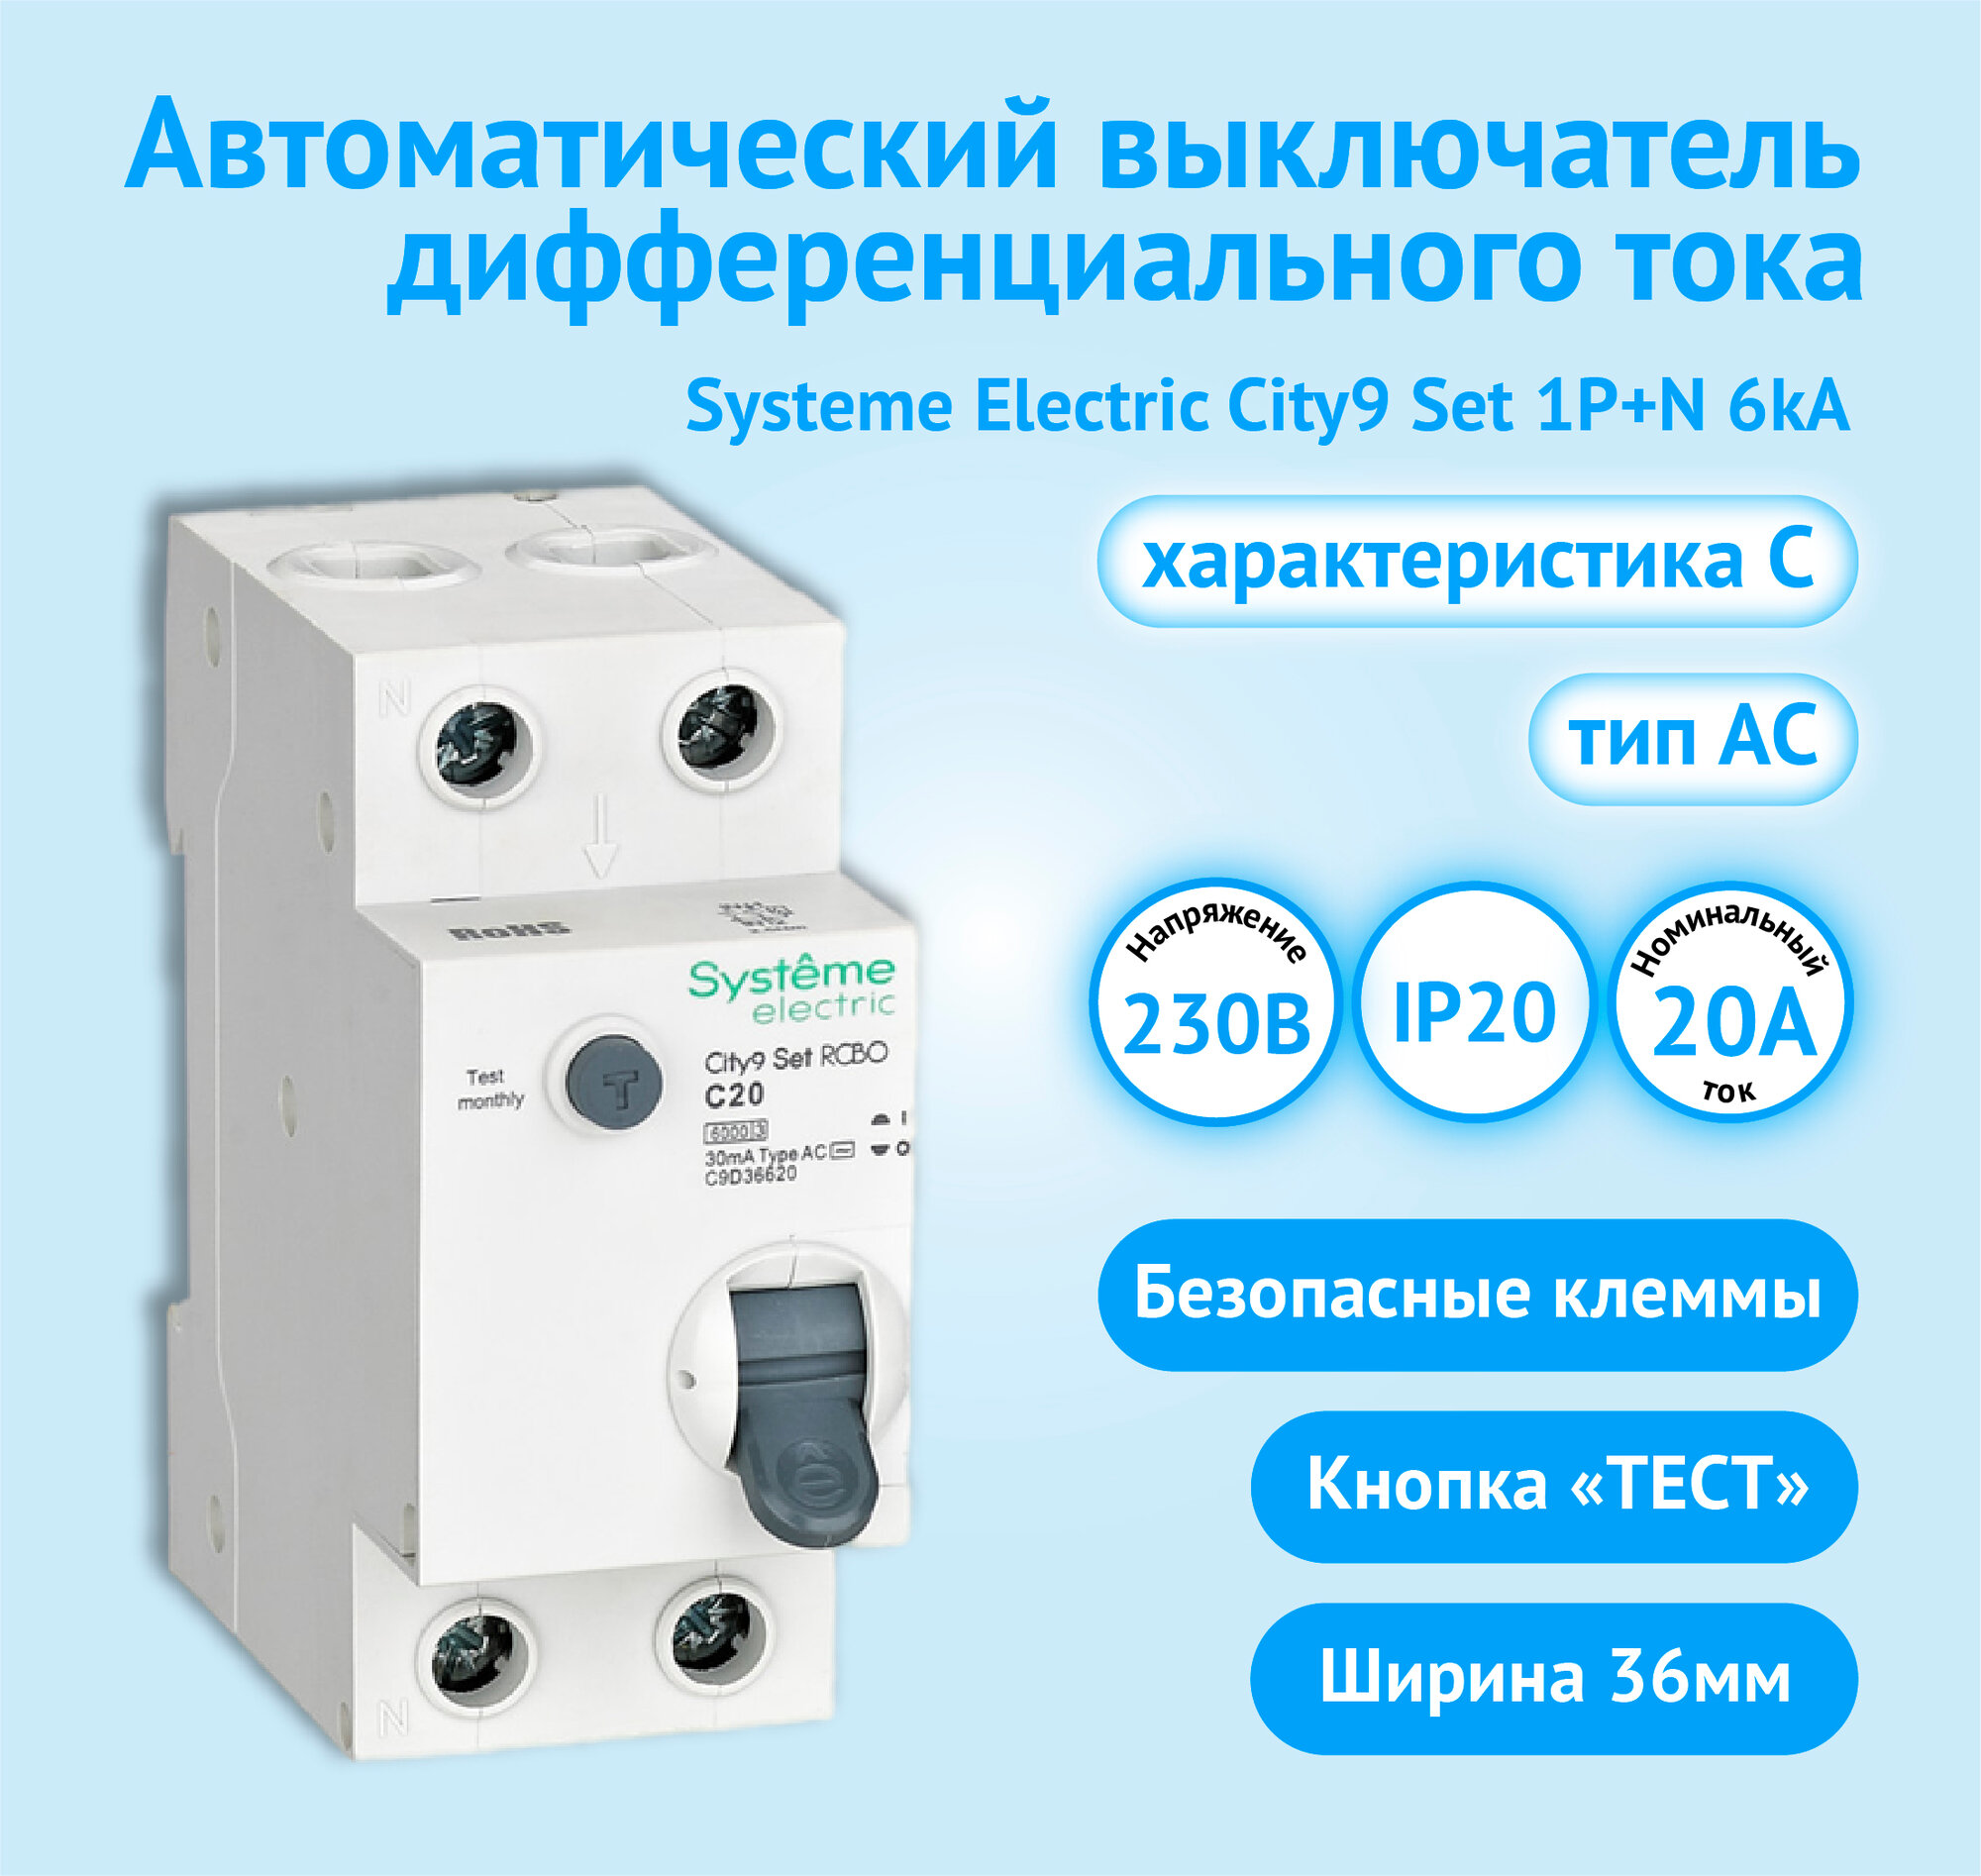 Автоматический выключатель дифференциального тока АВДТ Systeme Electric City9 Set 1P+N С 20А 6kA 30мА Тип-AС 230В